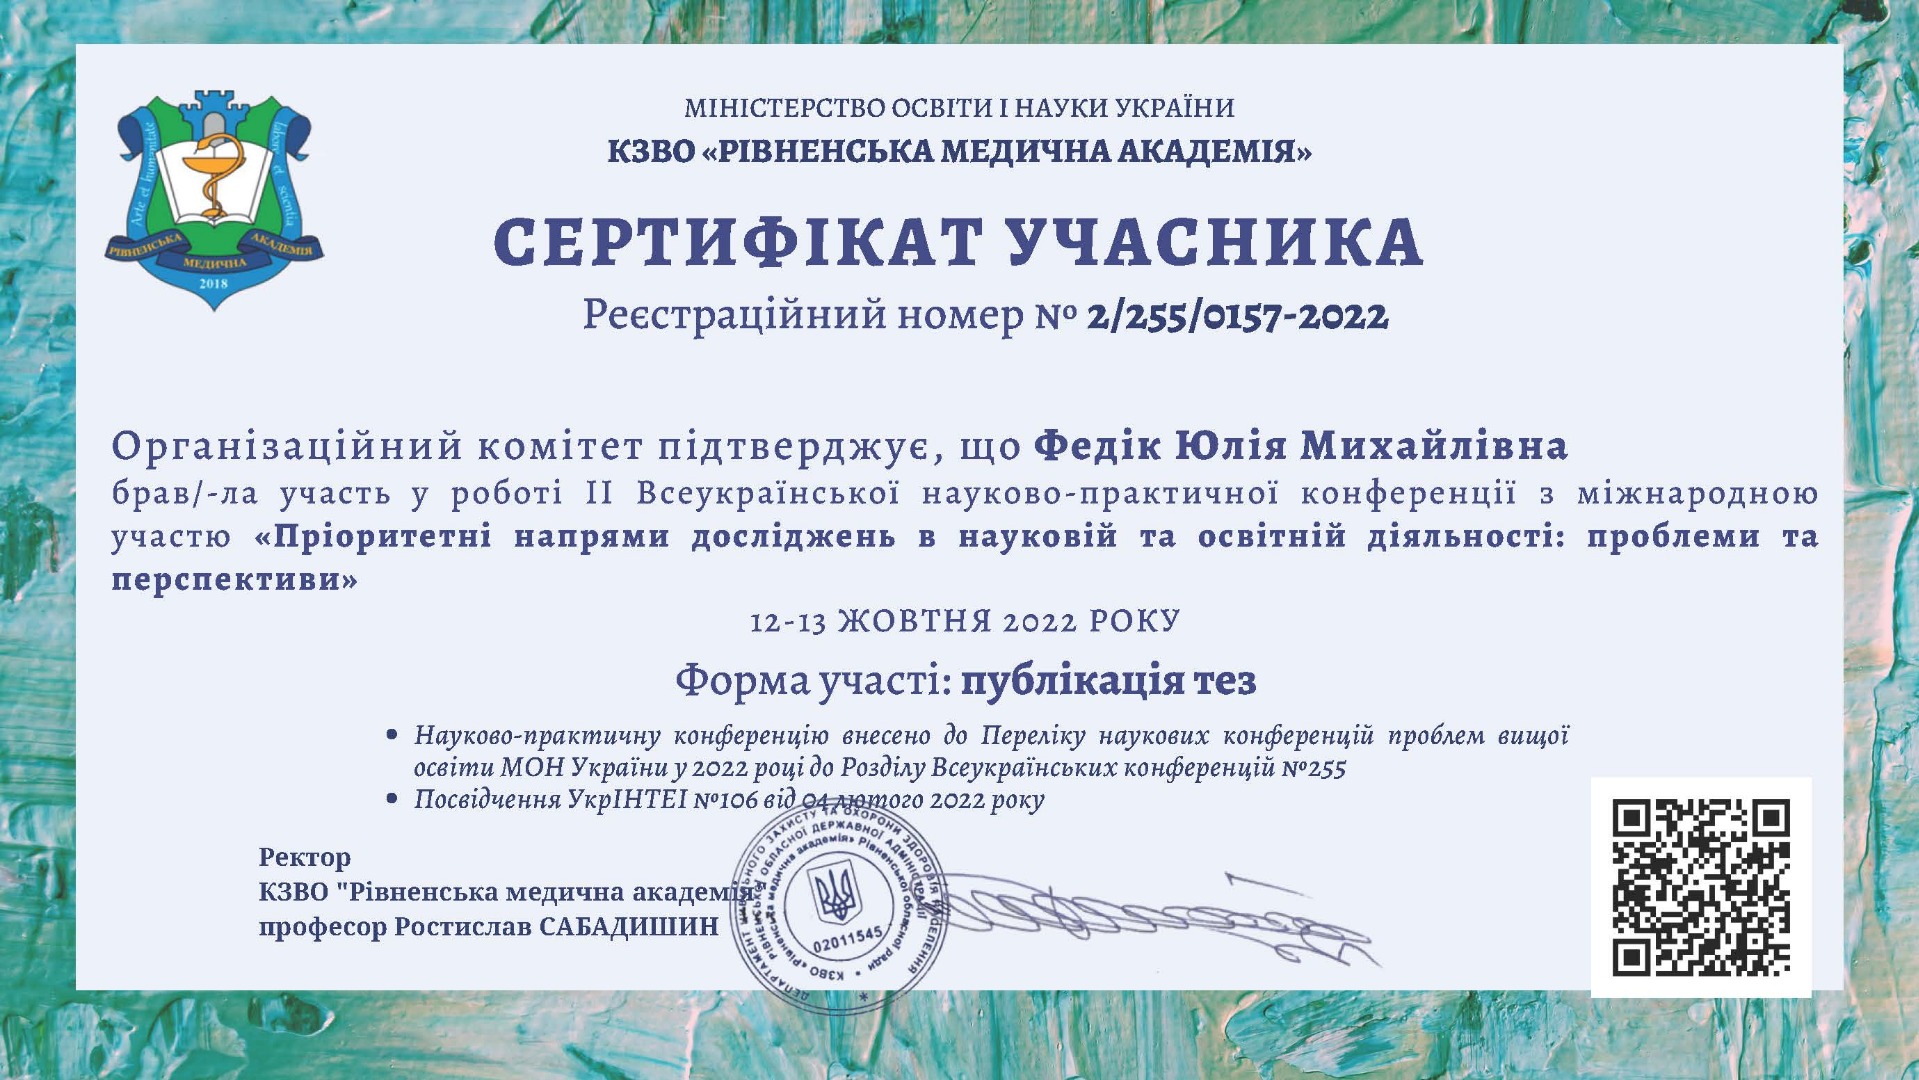 ІІ Всеукраїнська науково-практична конференція з міжнародною участю "Пріоритетні напрями досліджень у науковій та освітній діяльності: проблеми та перпективи"